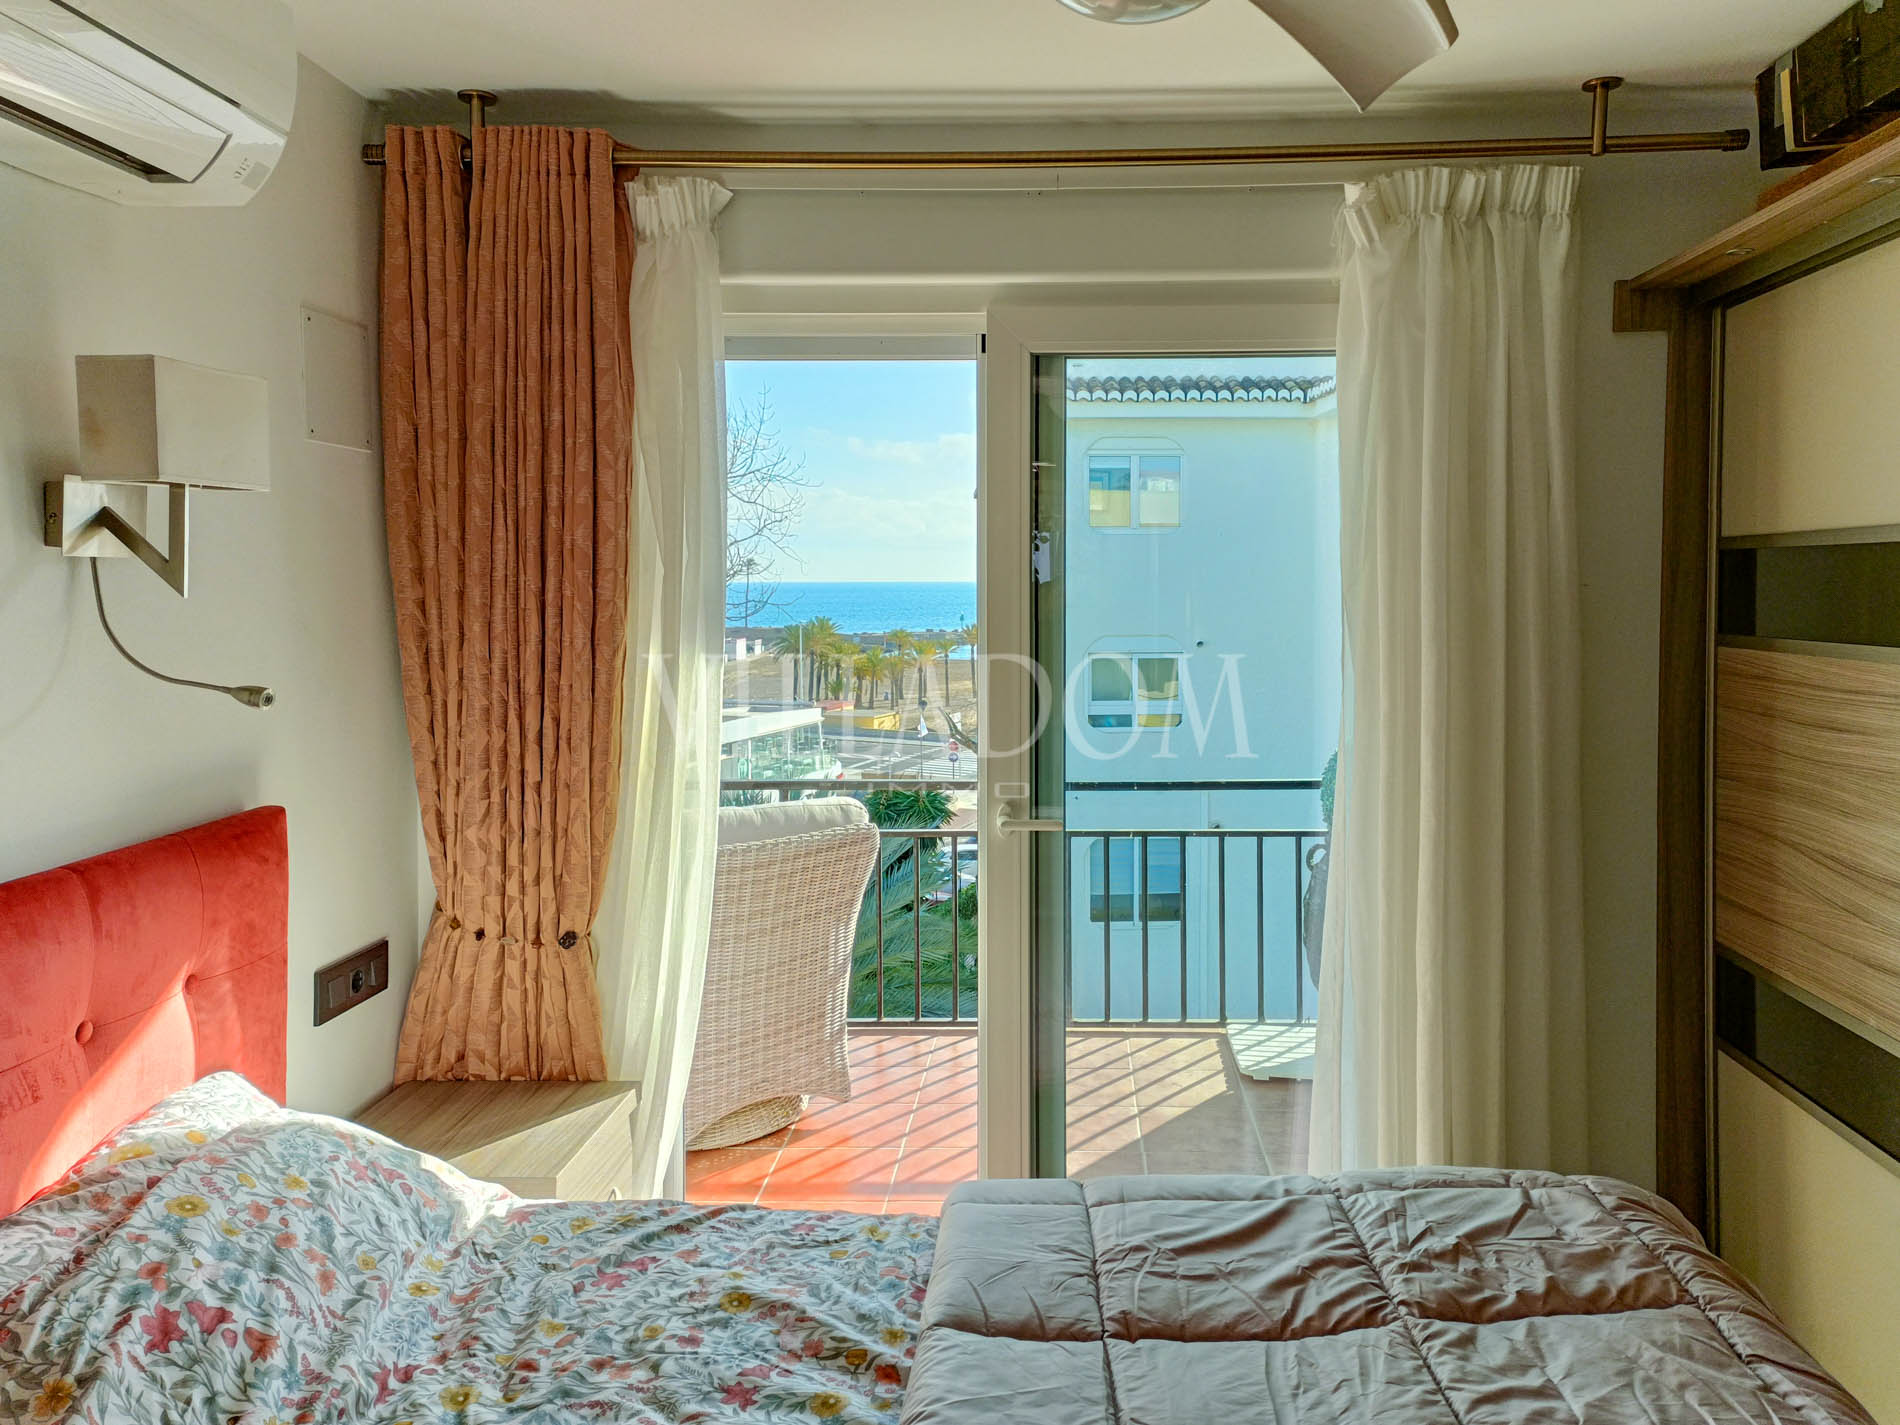 Exclusivo apartamento reformado con vistas al mar y Canal de la Fontana